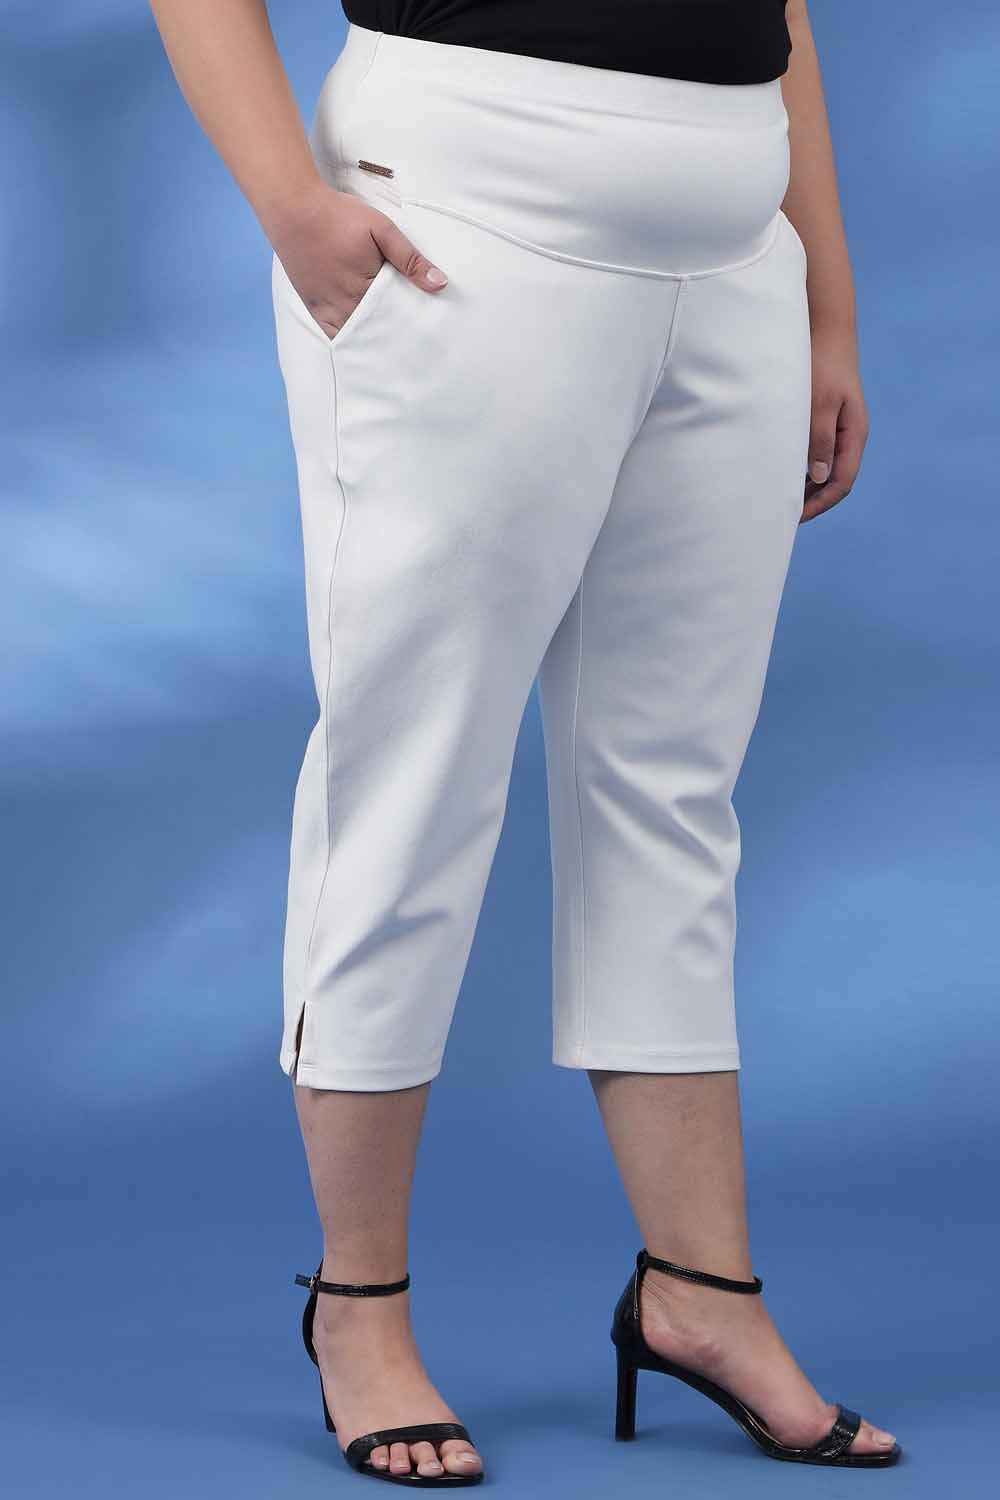 Plus Size Capris For Women - Cotton Capri Pants - Black at Rs